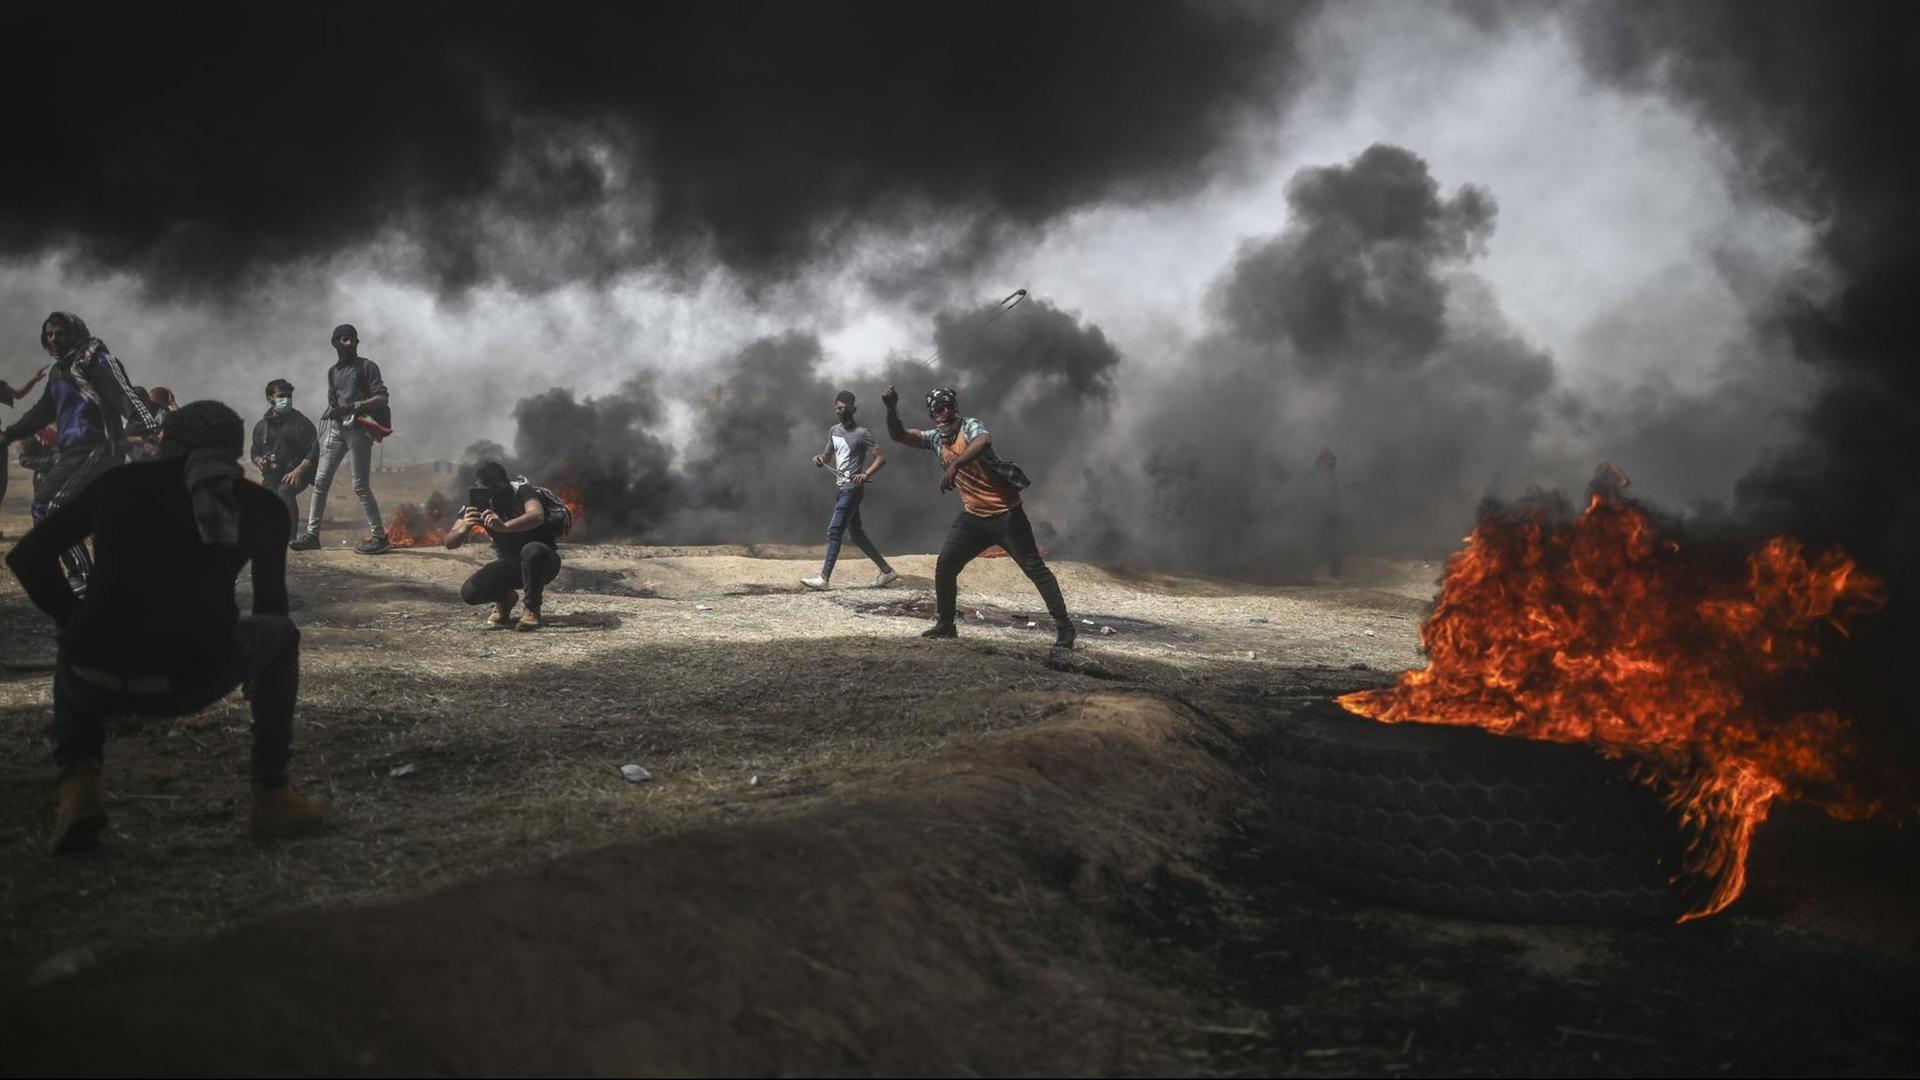 Palästinensische Autonomiegebiete, Gaza: Ein palästinensischer Mann zielt während eines Protests mit einer Steinschleuder auf israelische Soldaten.